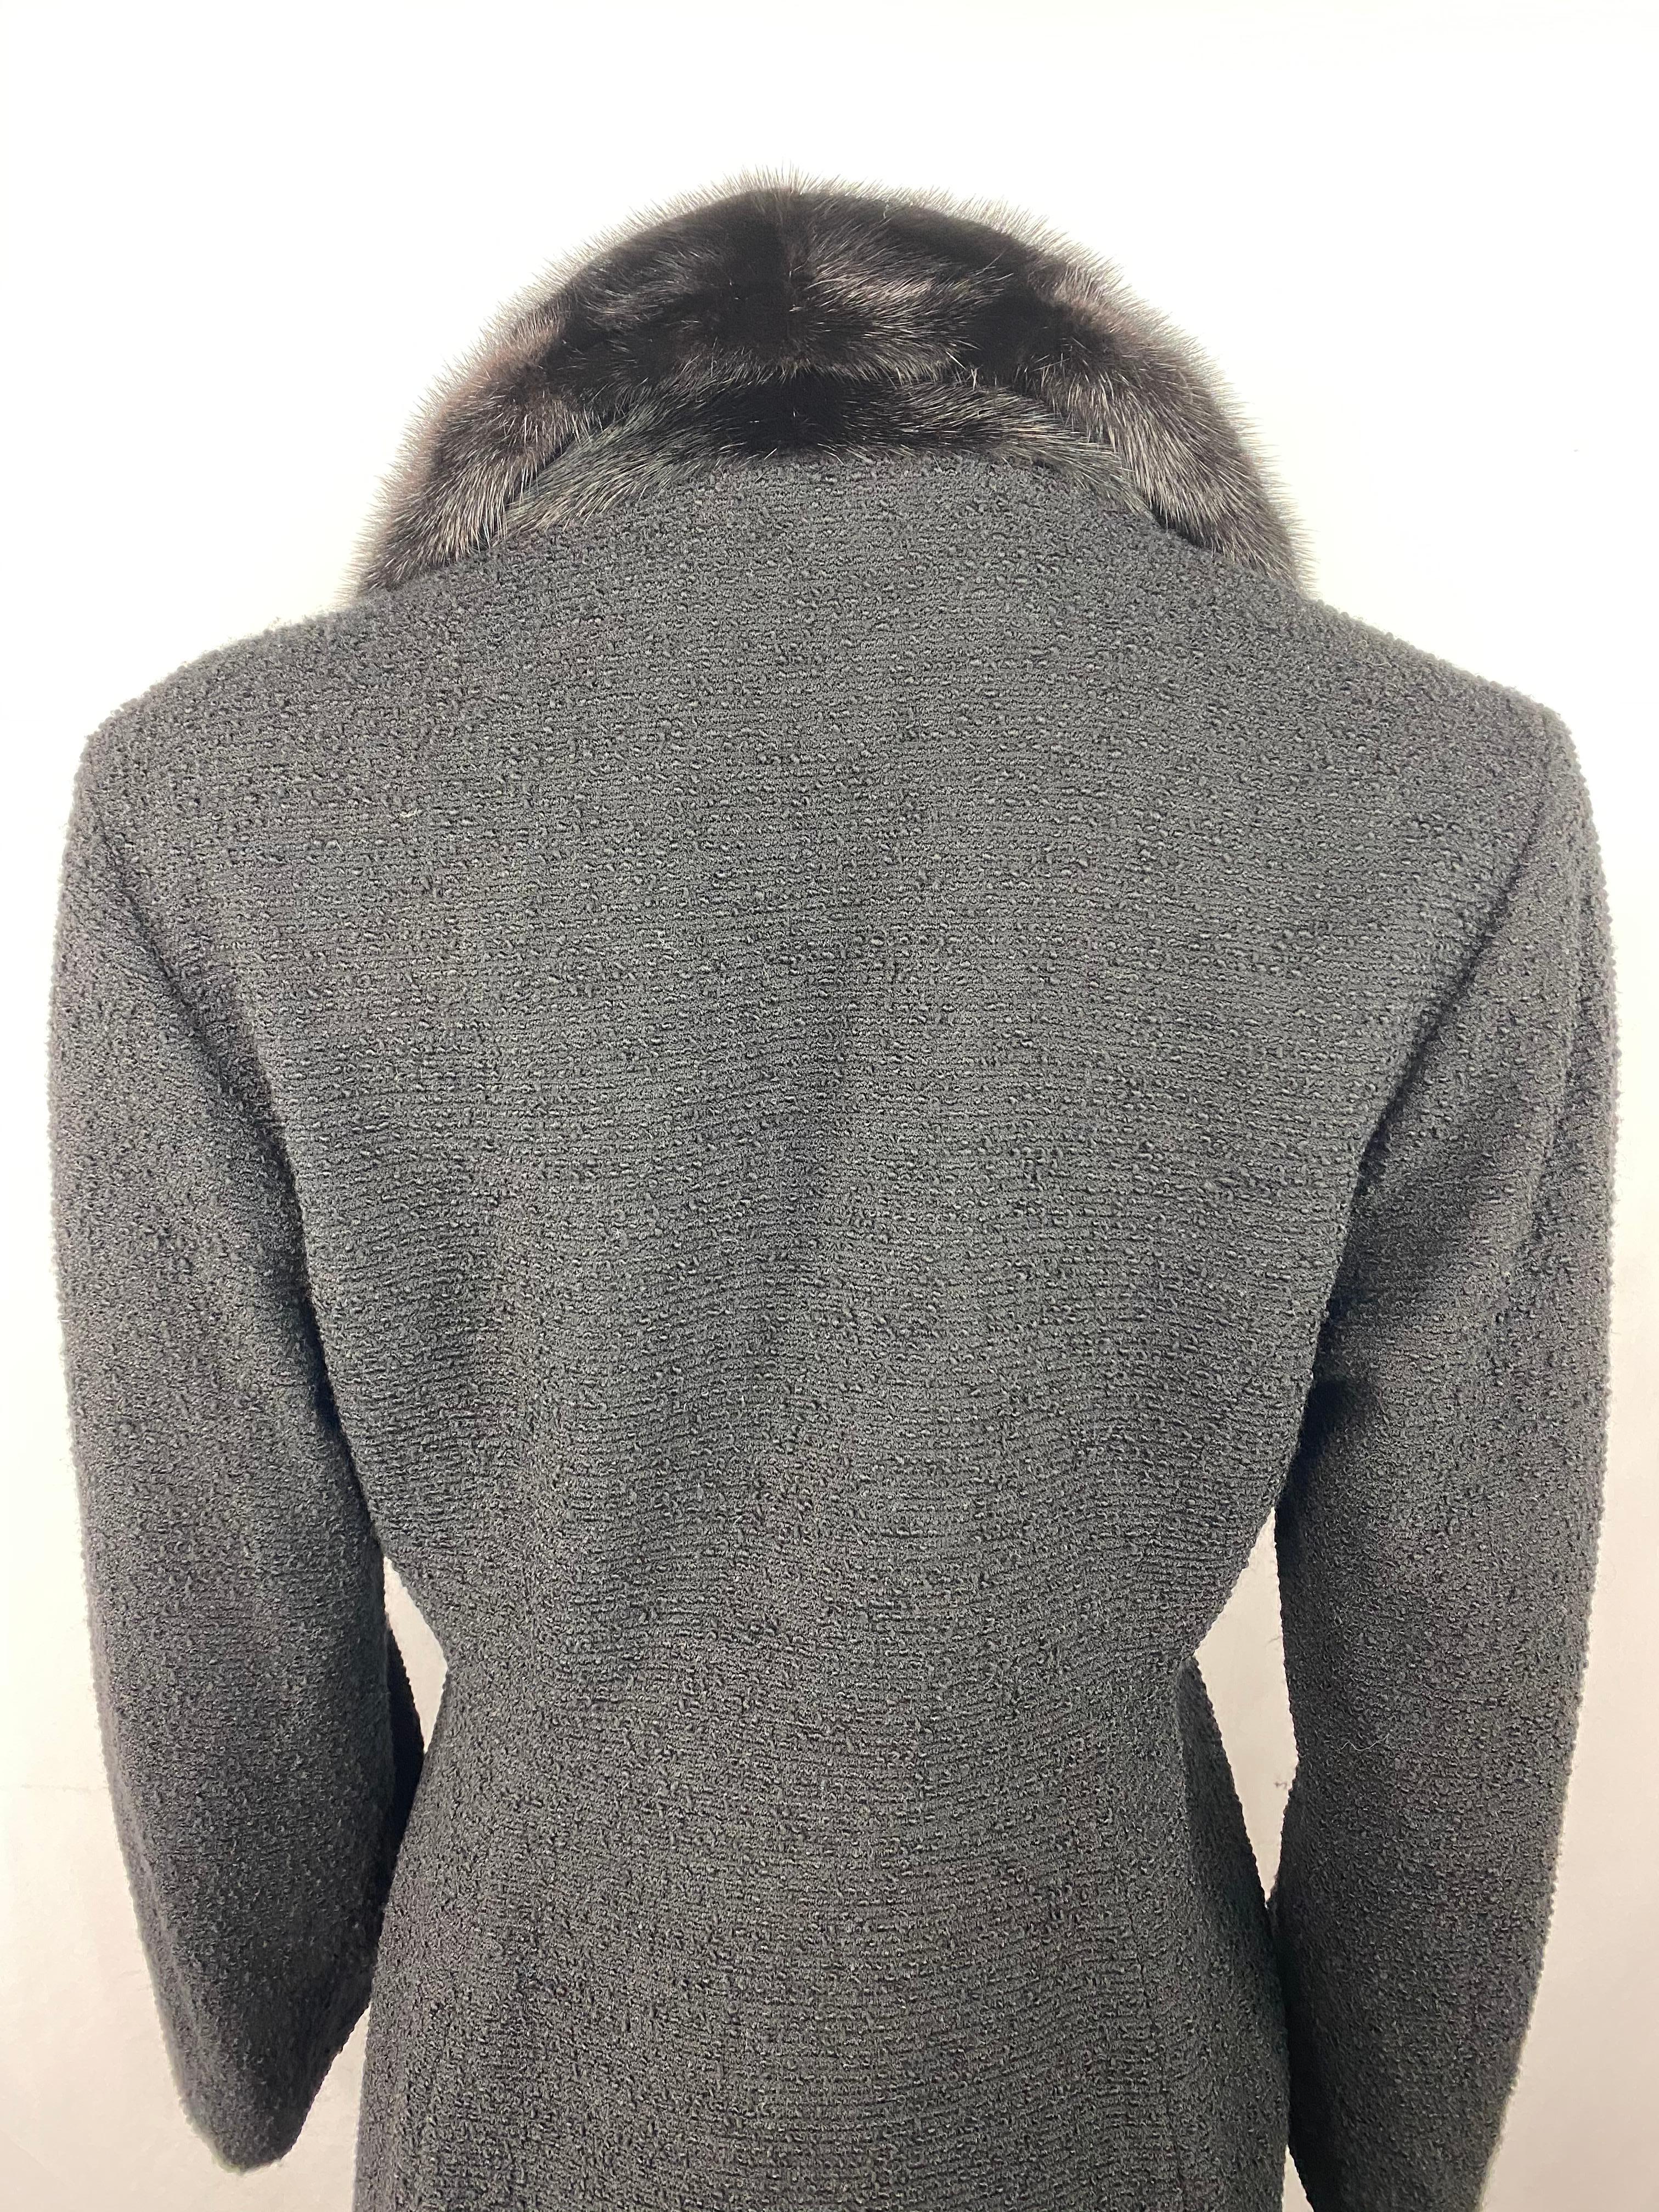 Christian Dior - Veste manteau en tweed de laine noir et fourrure, taille 40 5